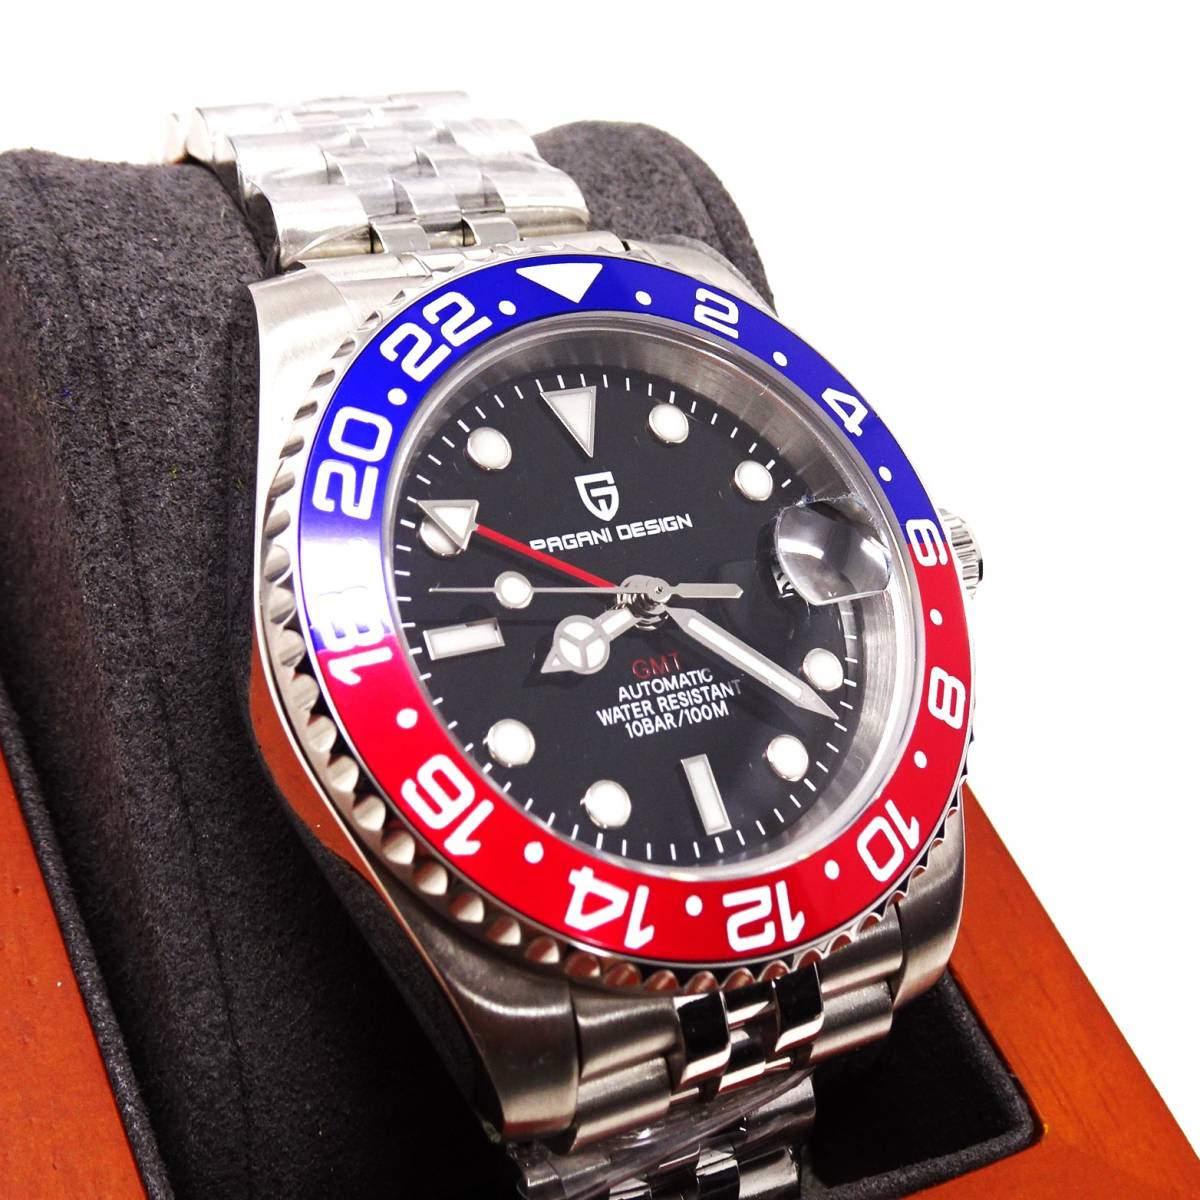 送料無料・新品・パガーニデザイン・メンズ・機械式腕時計 ・GMT針オマージュウオッチ・ペプシベゼル・ジュビリーメタルストラップPD-1662 _画像2